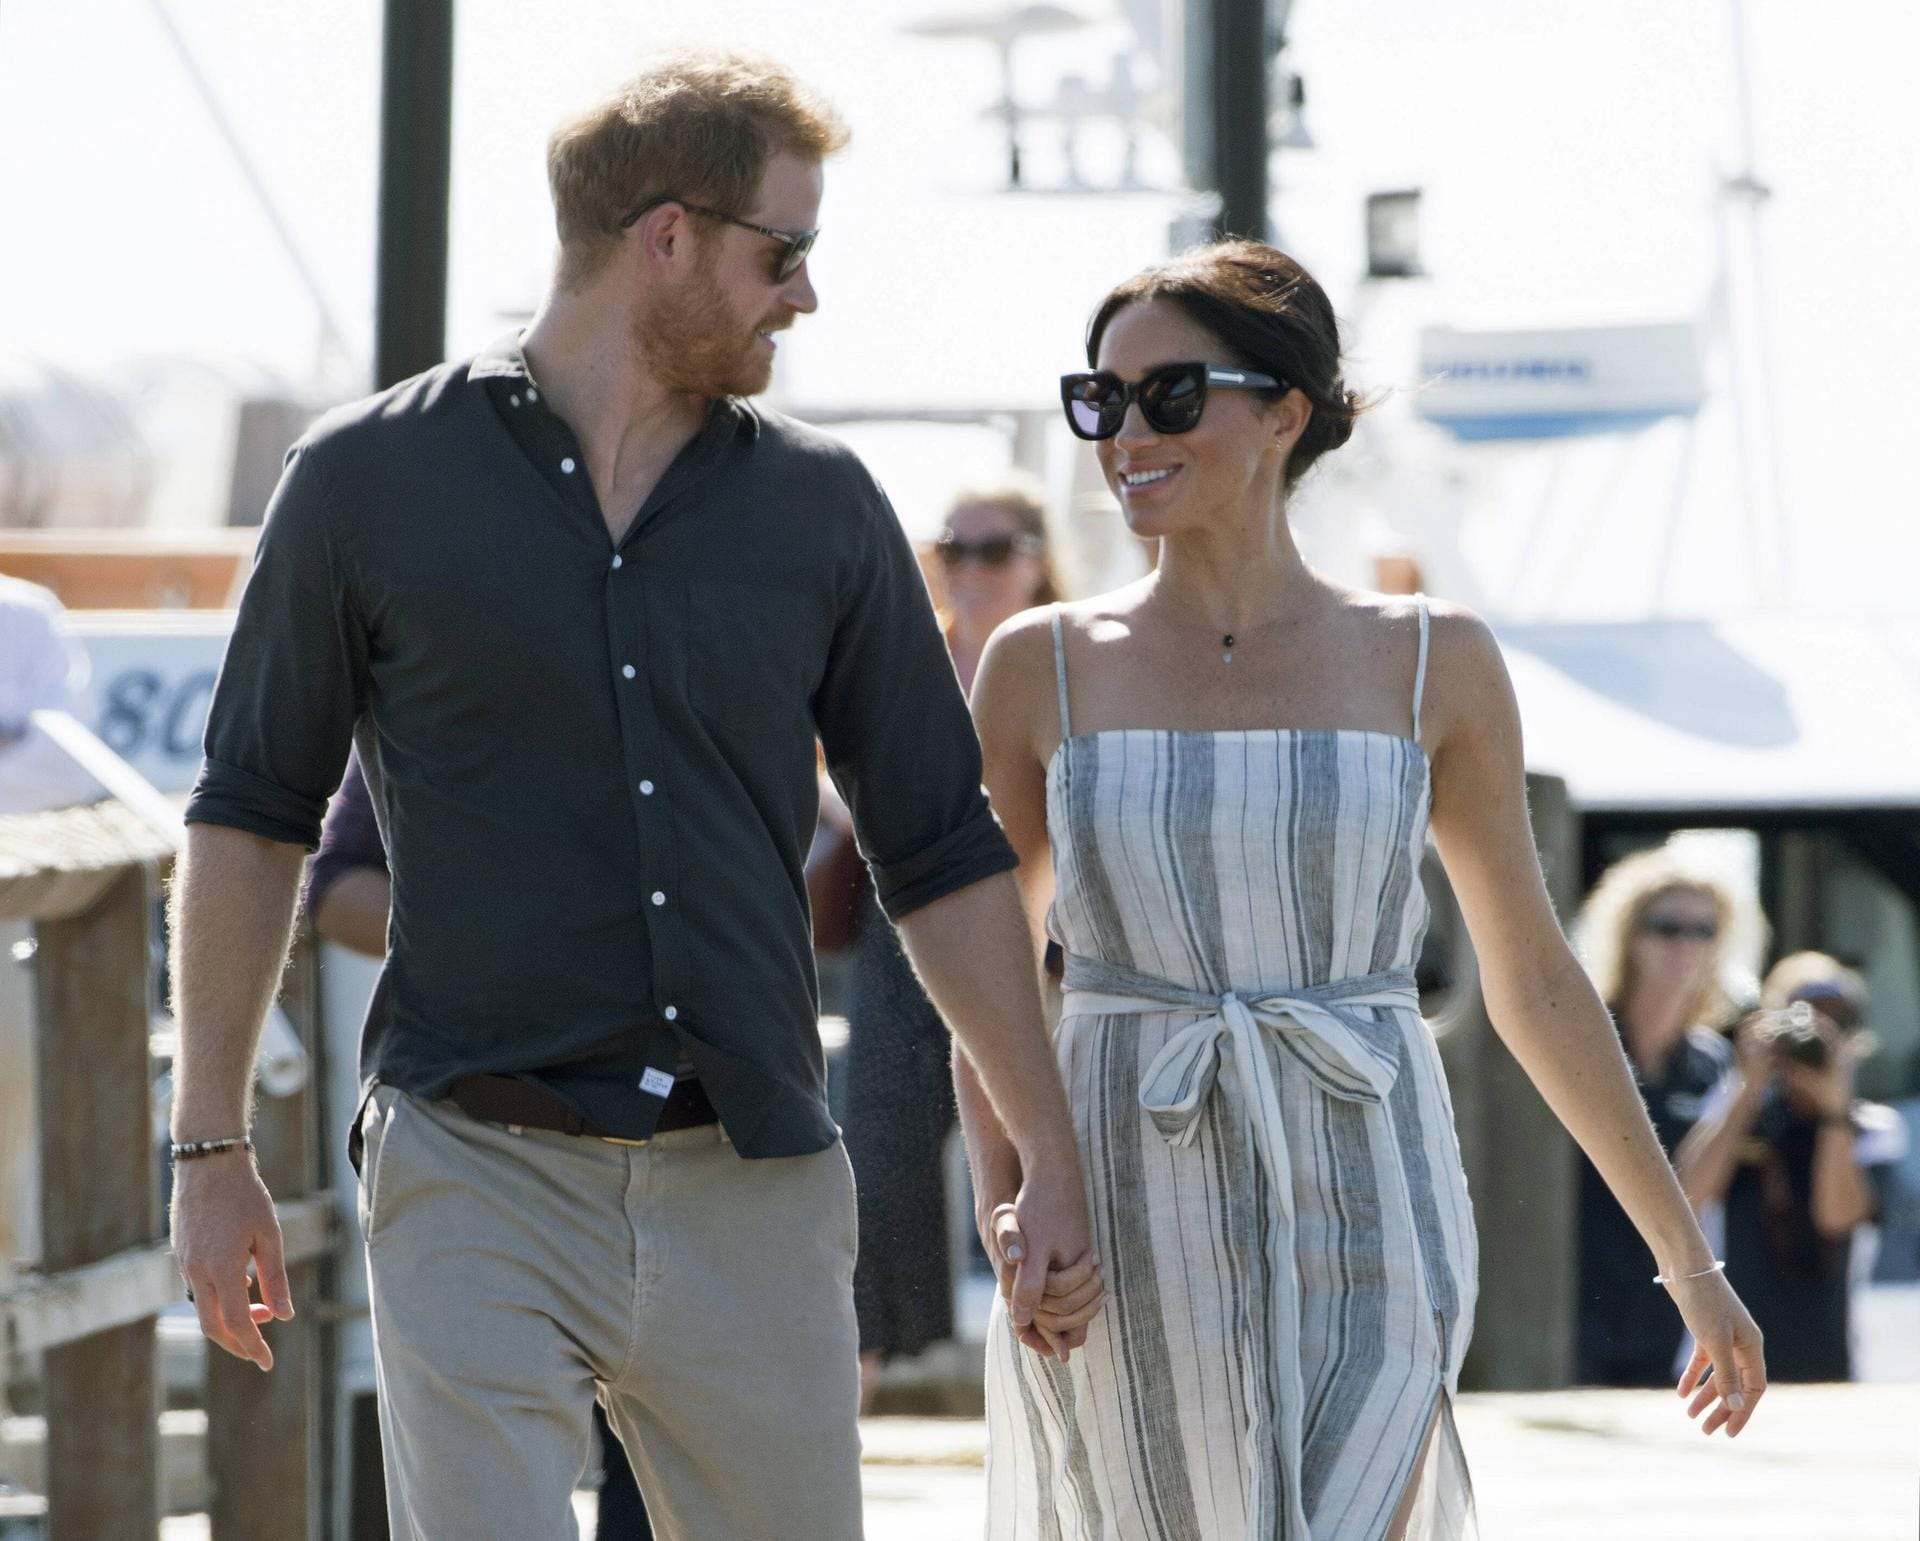 19. Mai 2018: Prinz Harry heiratet seine Freundin, die US-Schauspielerin Meghan Markle, auf Windsor Castle. Die Duchess of Sussex gehört seitdem zur britischen Königsfamilie.